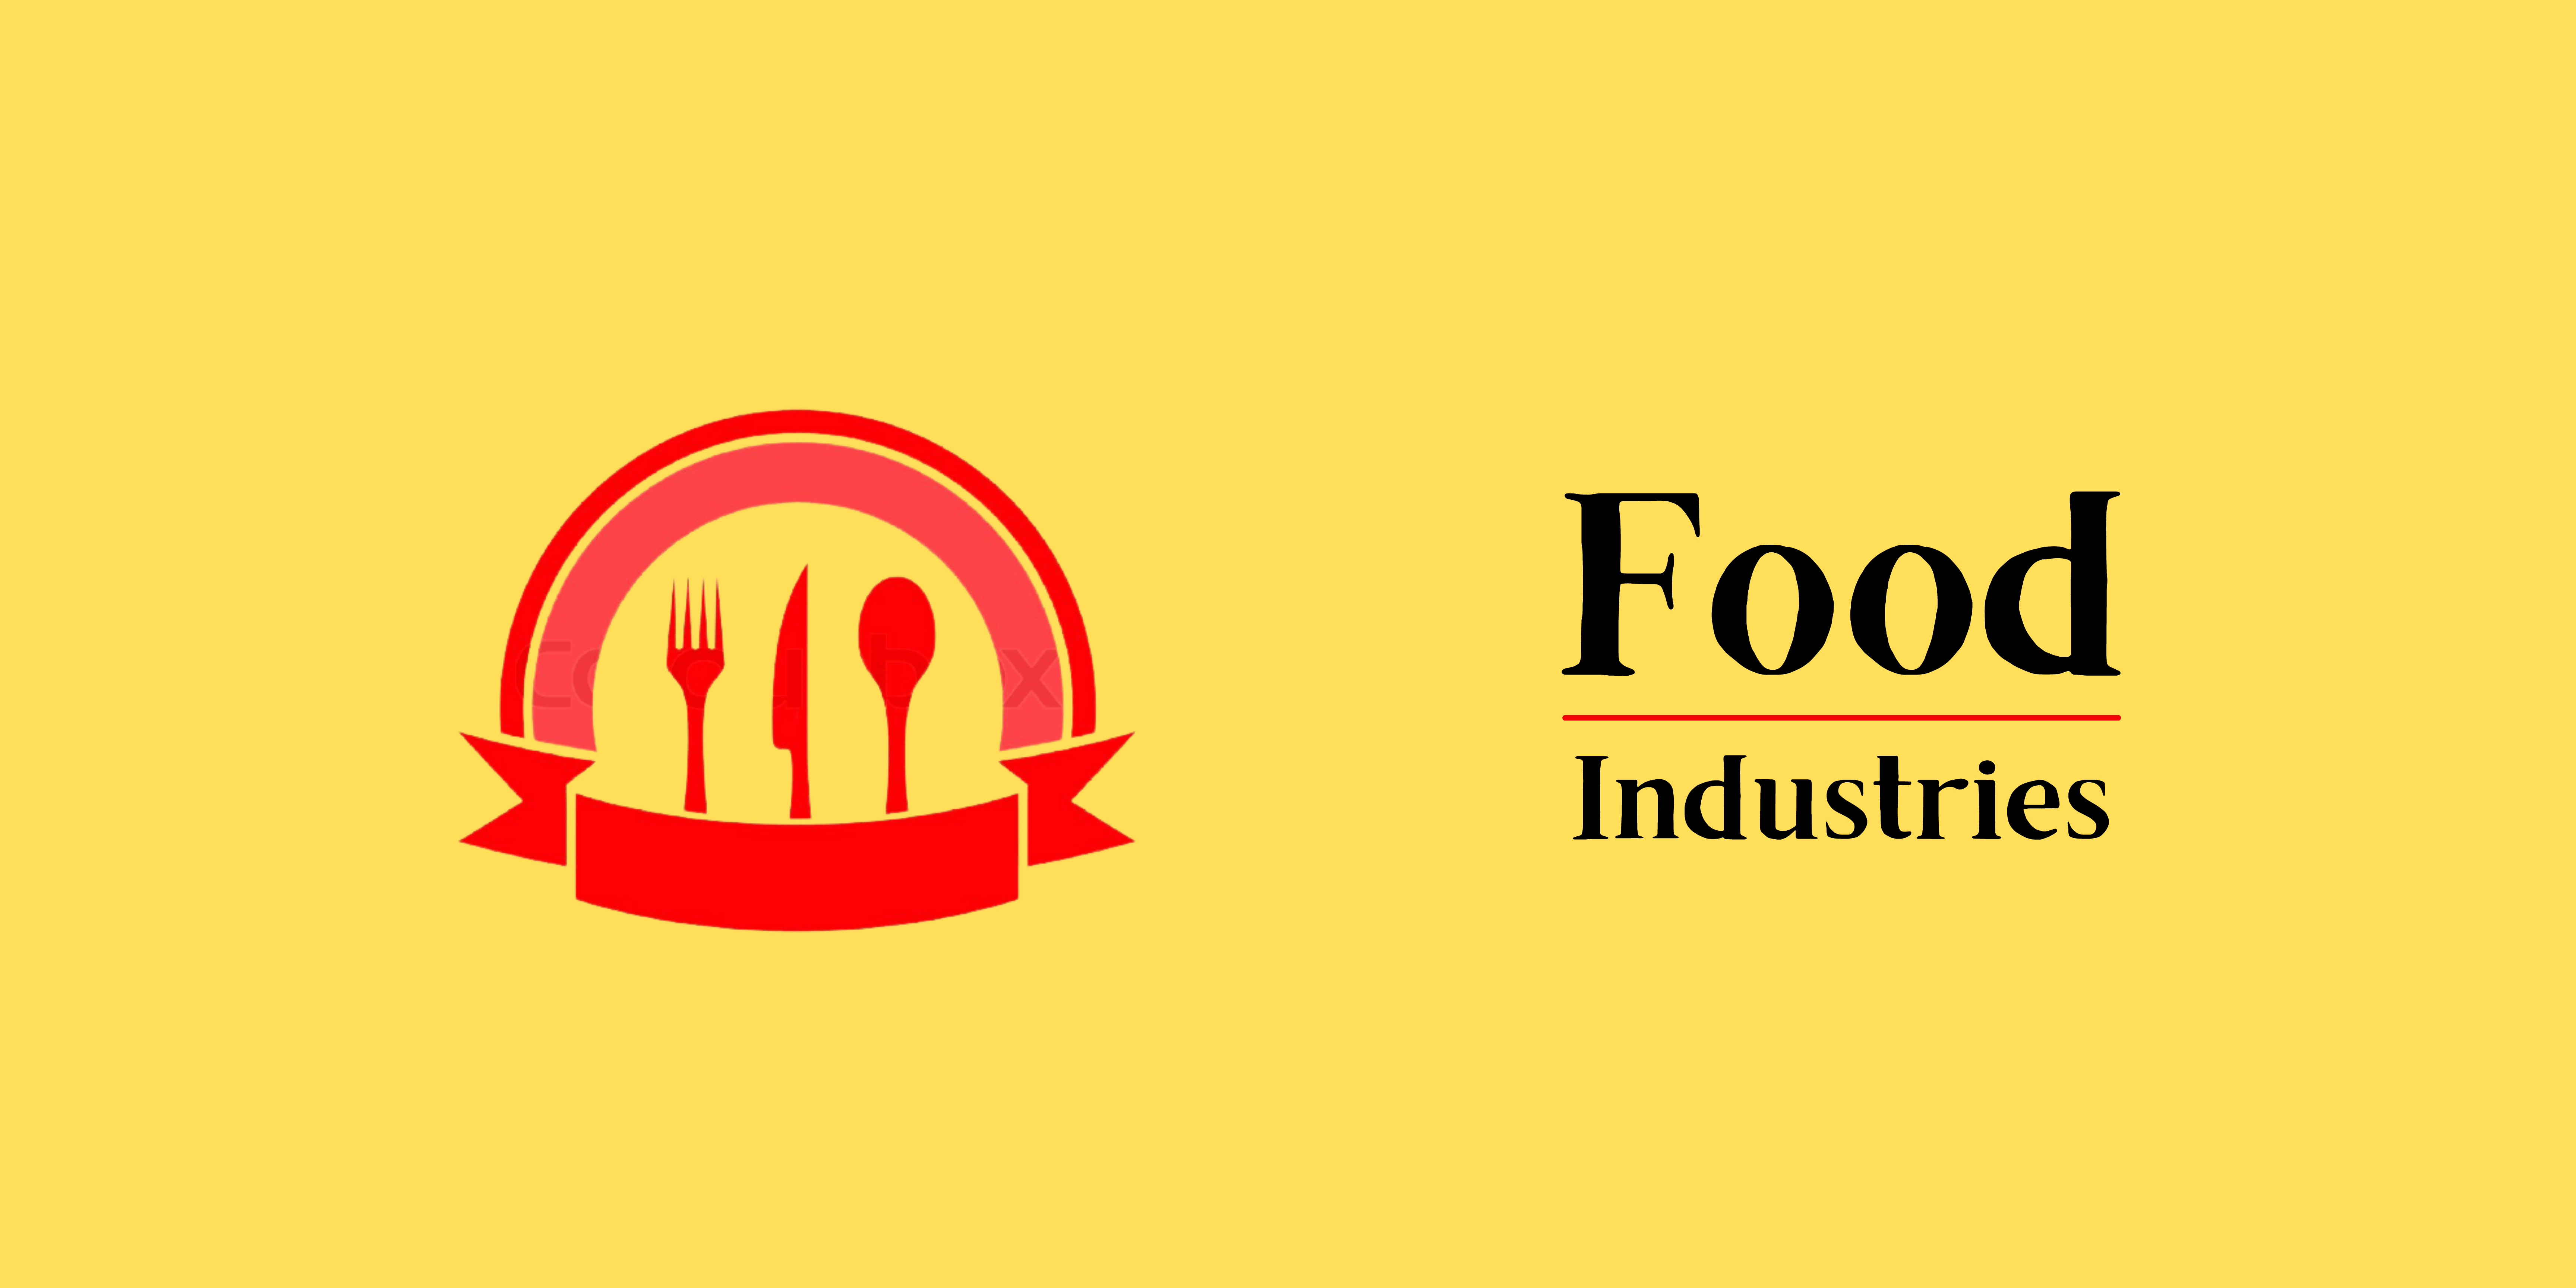 Food Industries (2)